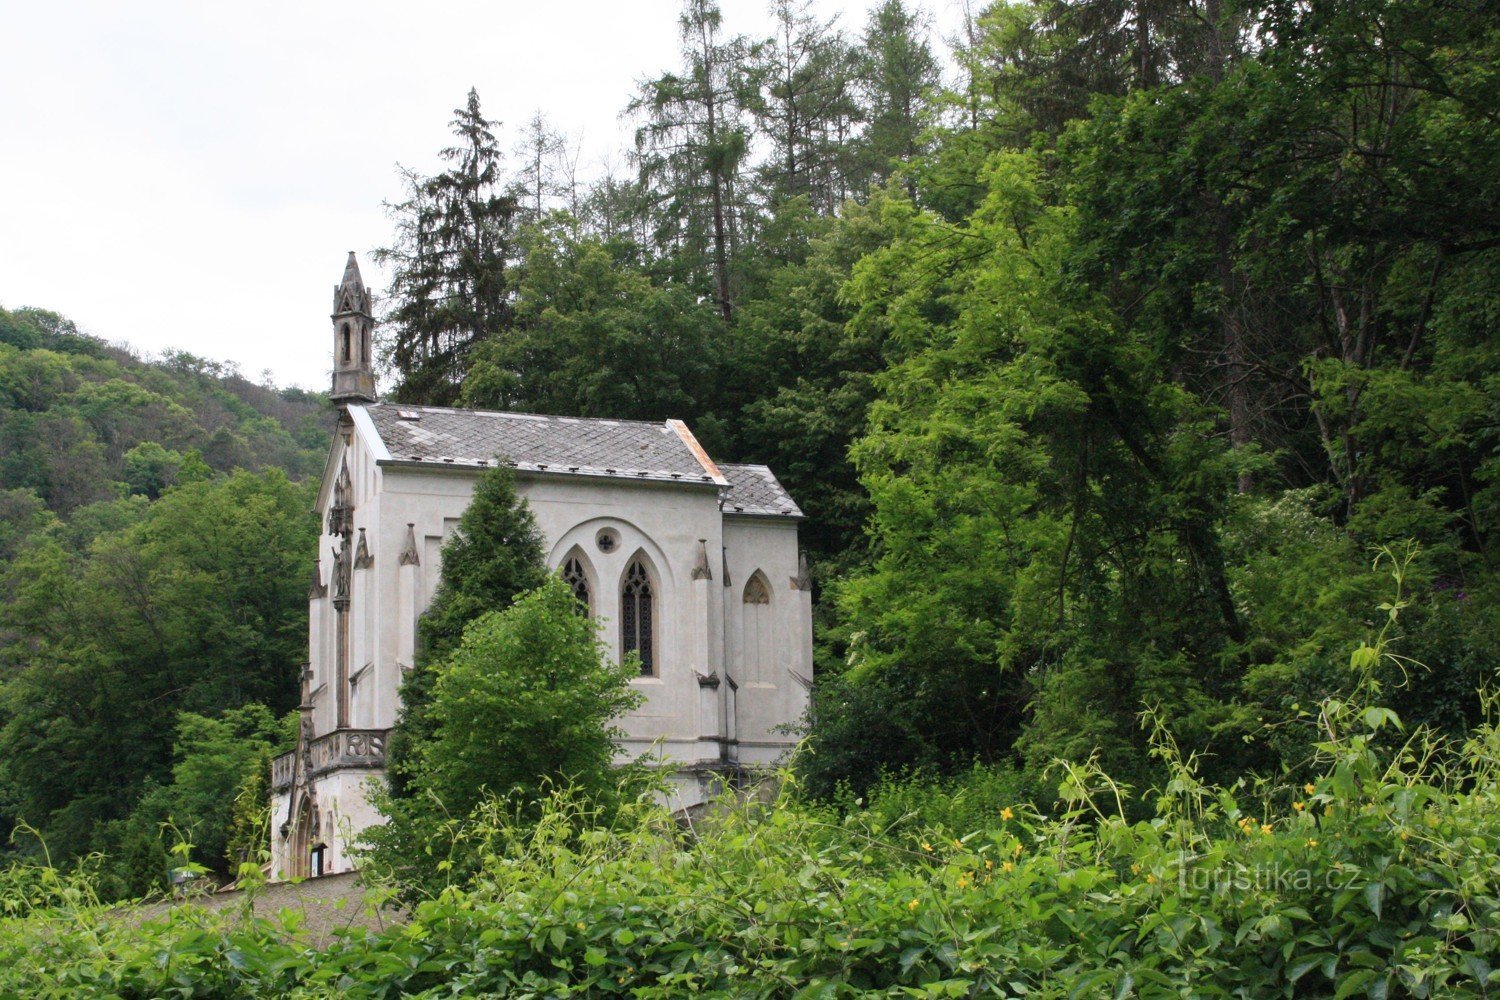 St. Jan pod Skalou et la chapelle du cimetière - la chapelle de St. Maximilien